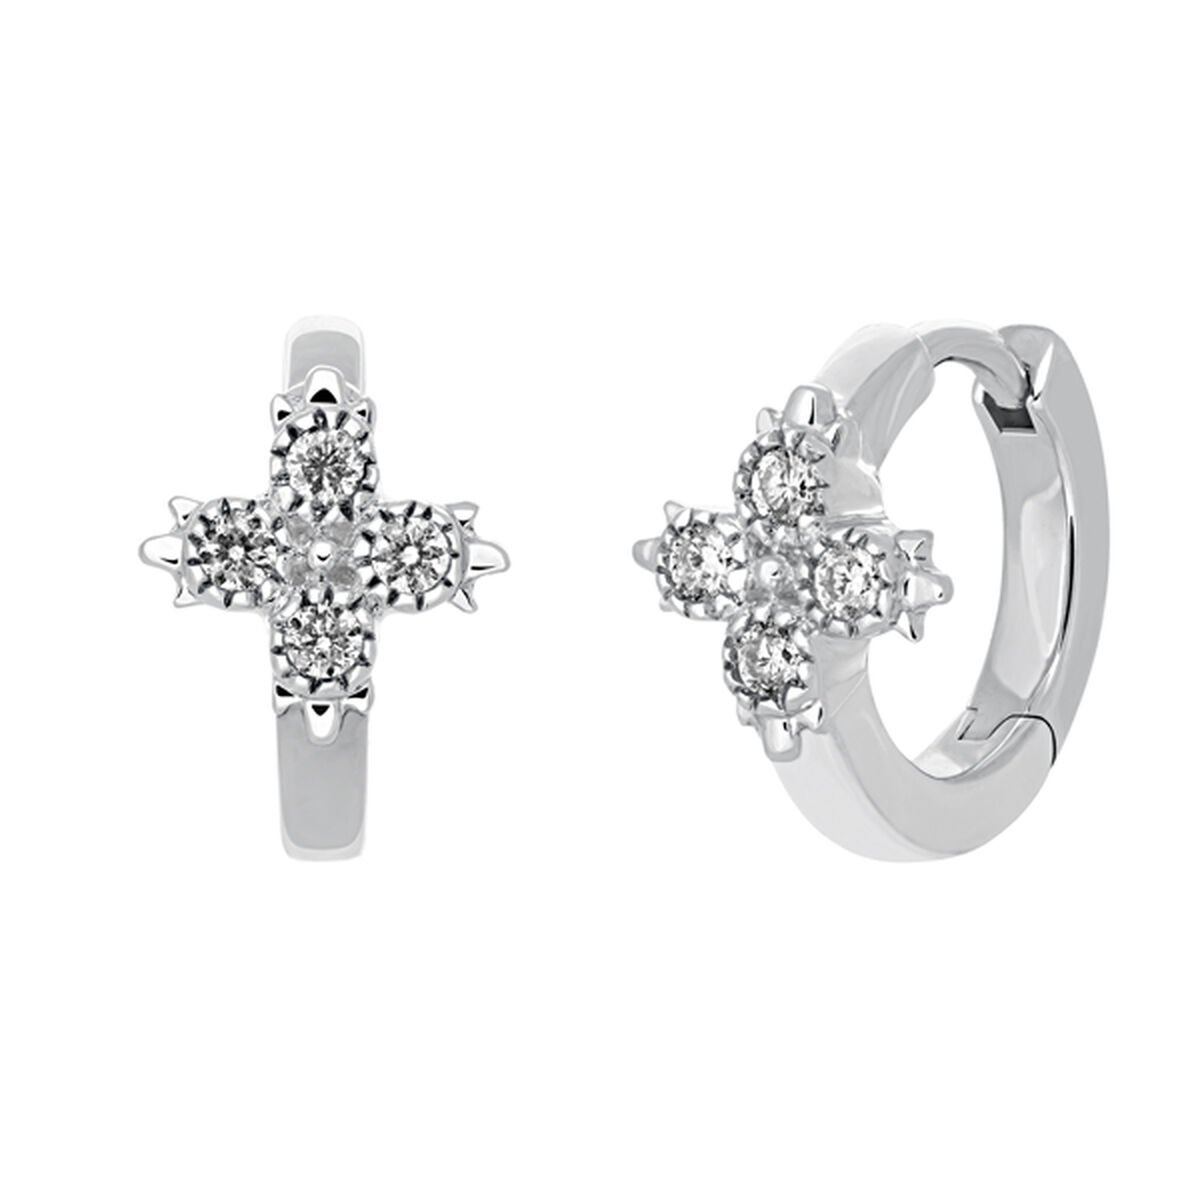 Boucle d’oreille piercing créole diamants or blanc 0,033 ct , J03386-01-H, hi-res